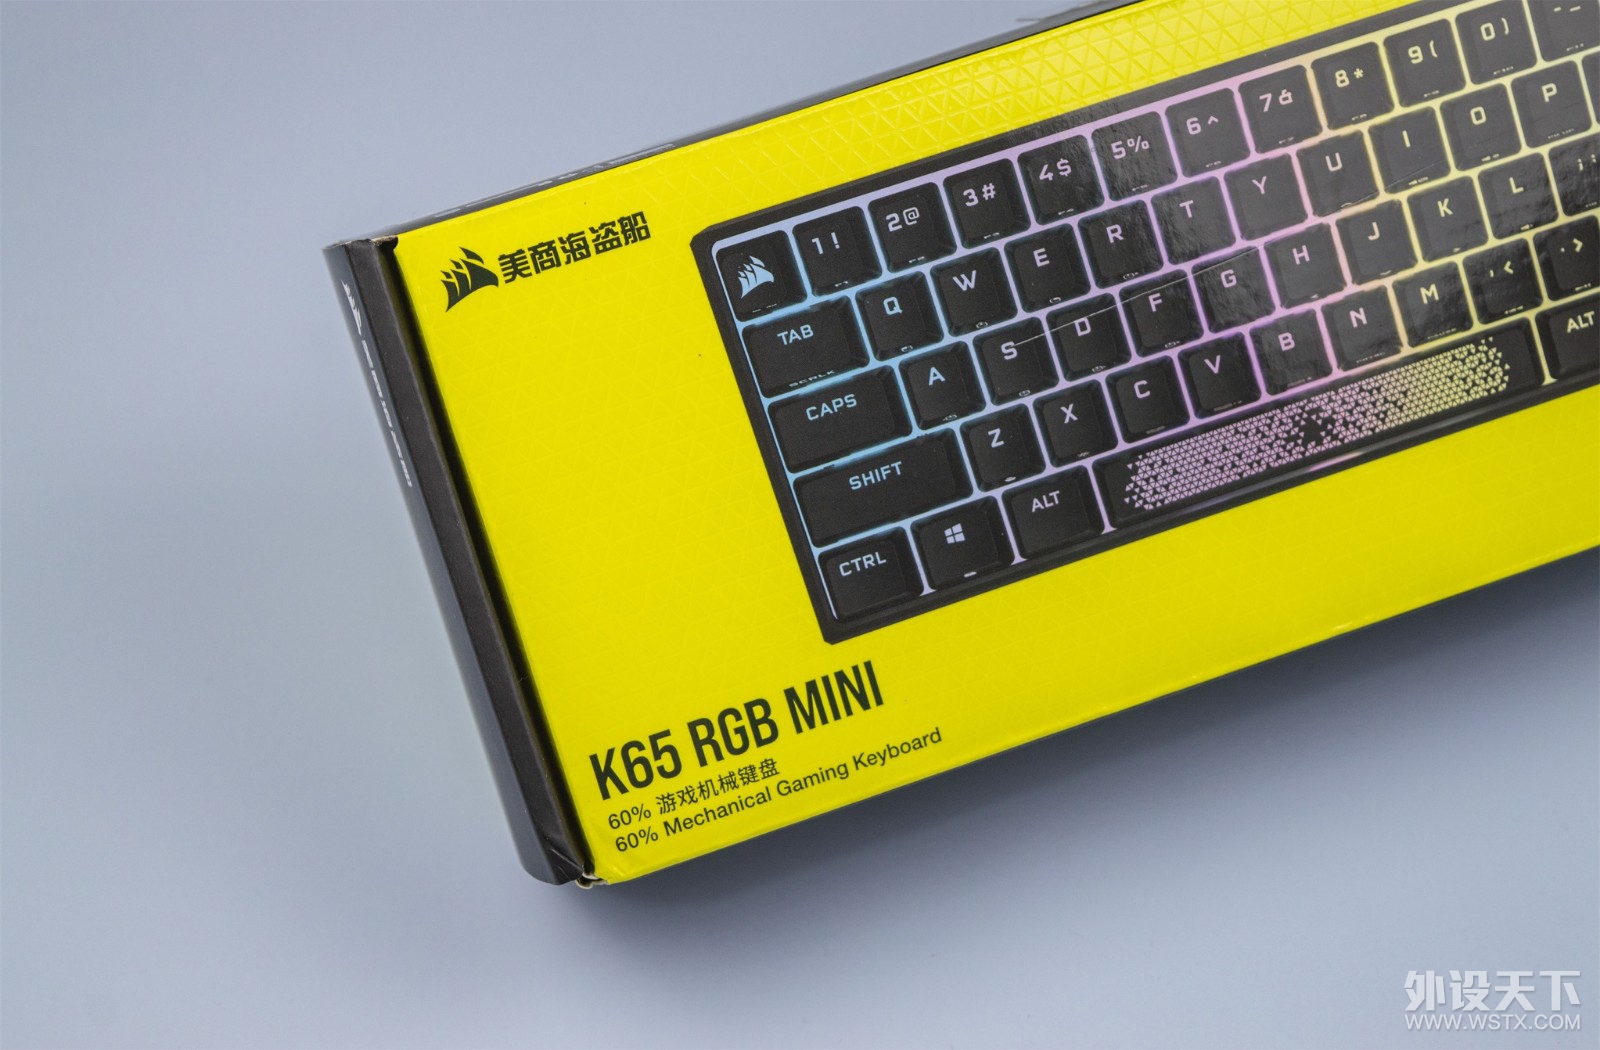 ³:K65 RGB Mini